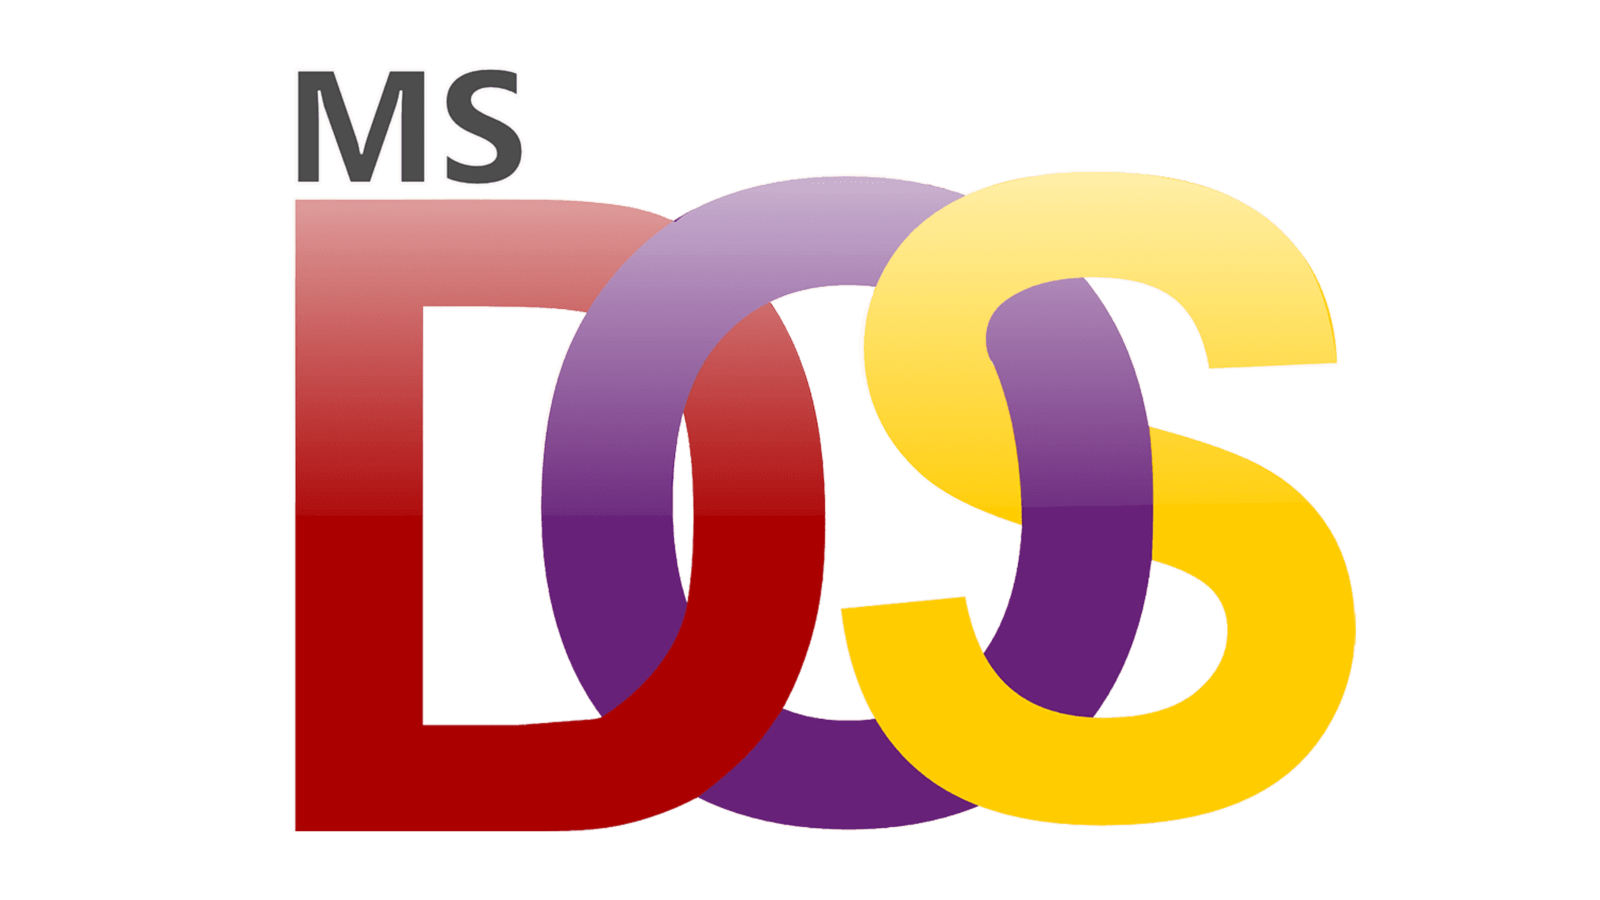 Ms Dos Logo